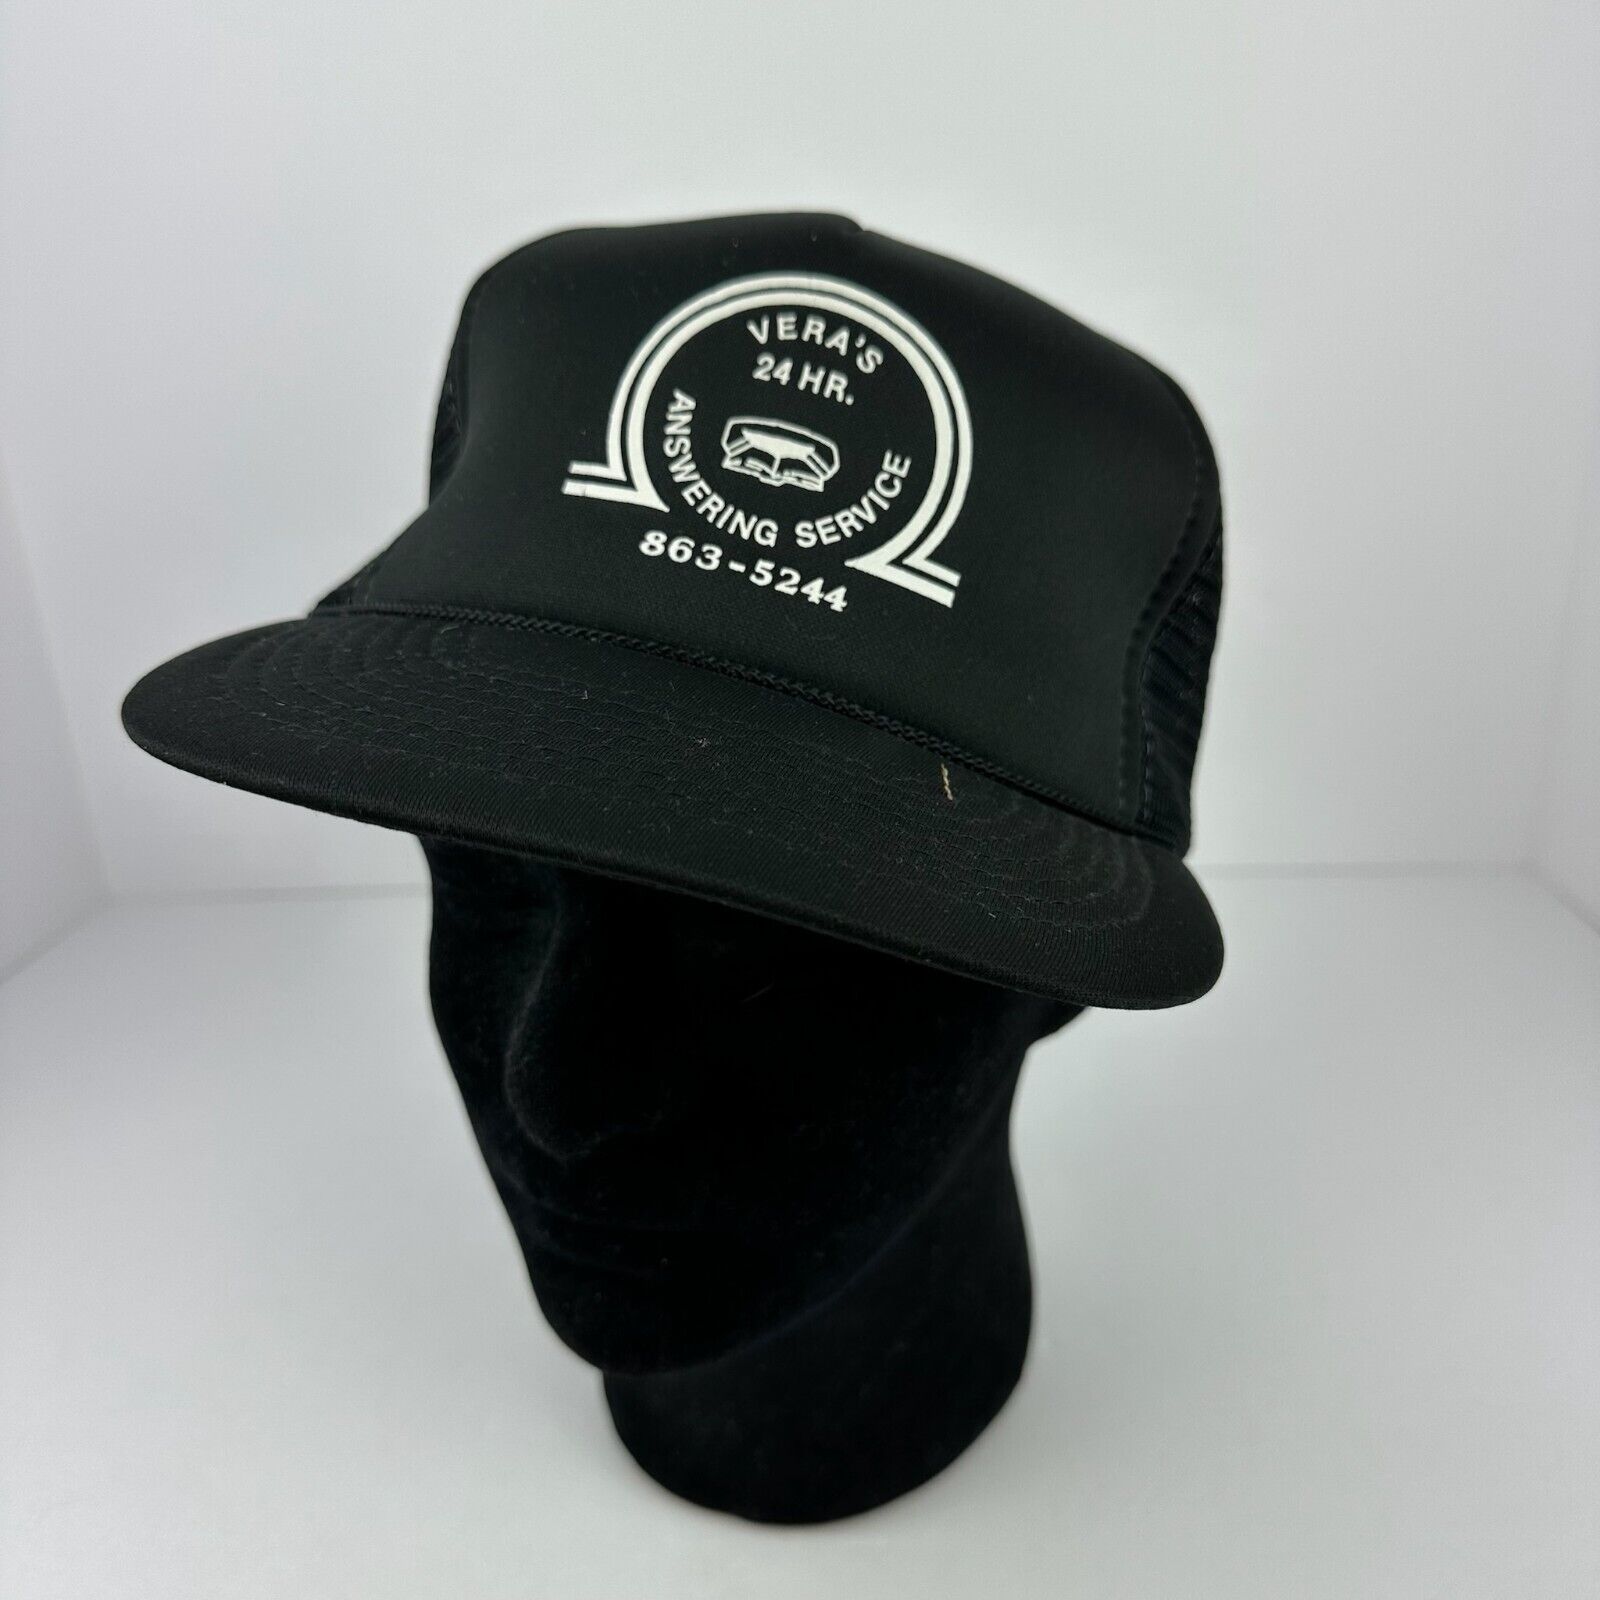 Vintage Trucker Hat Black Snapback Adjustable Hat Veras 24 Hour Answering Servic